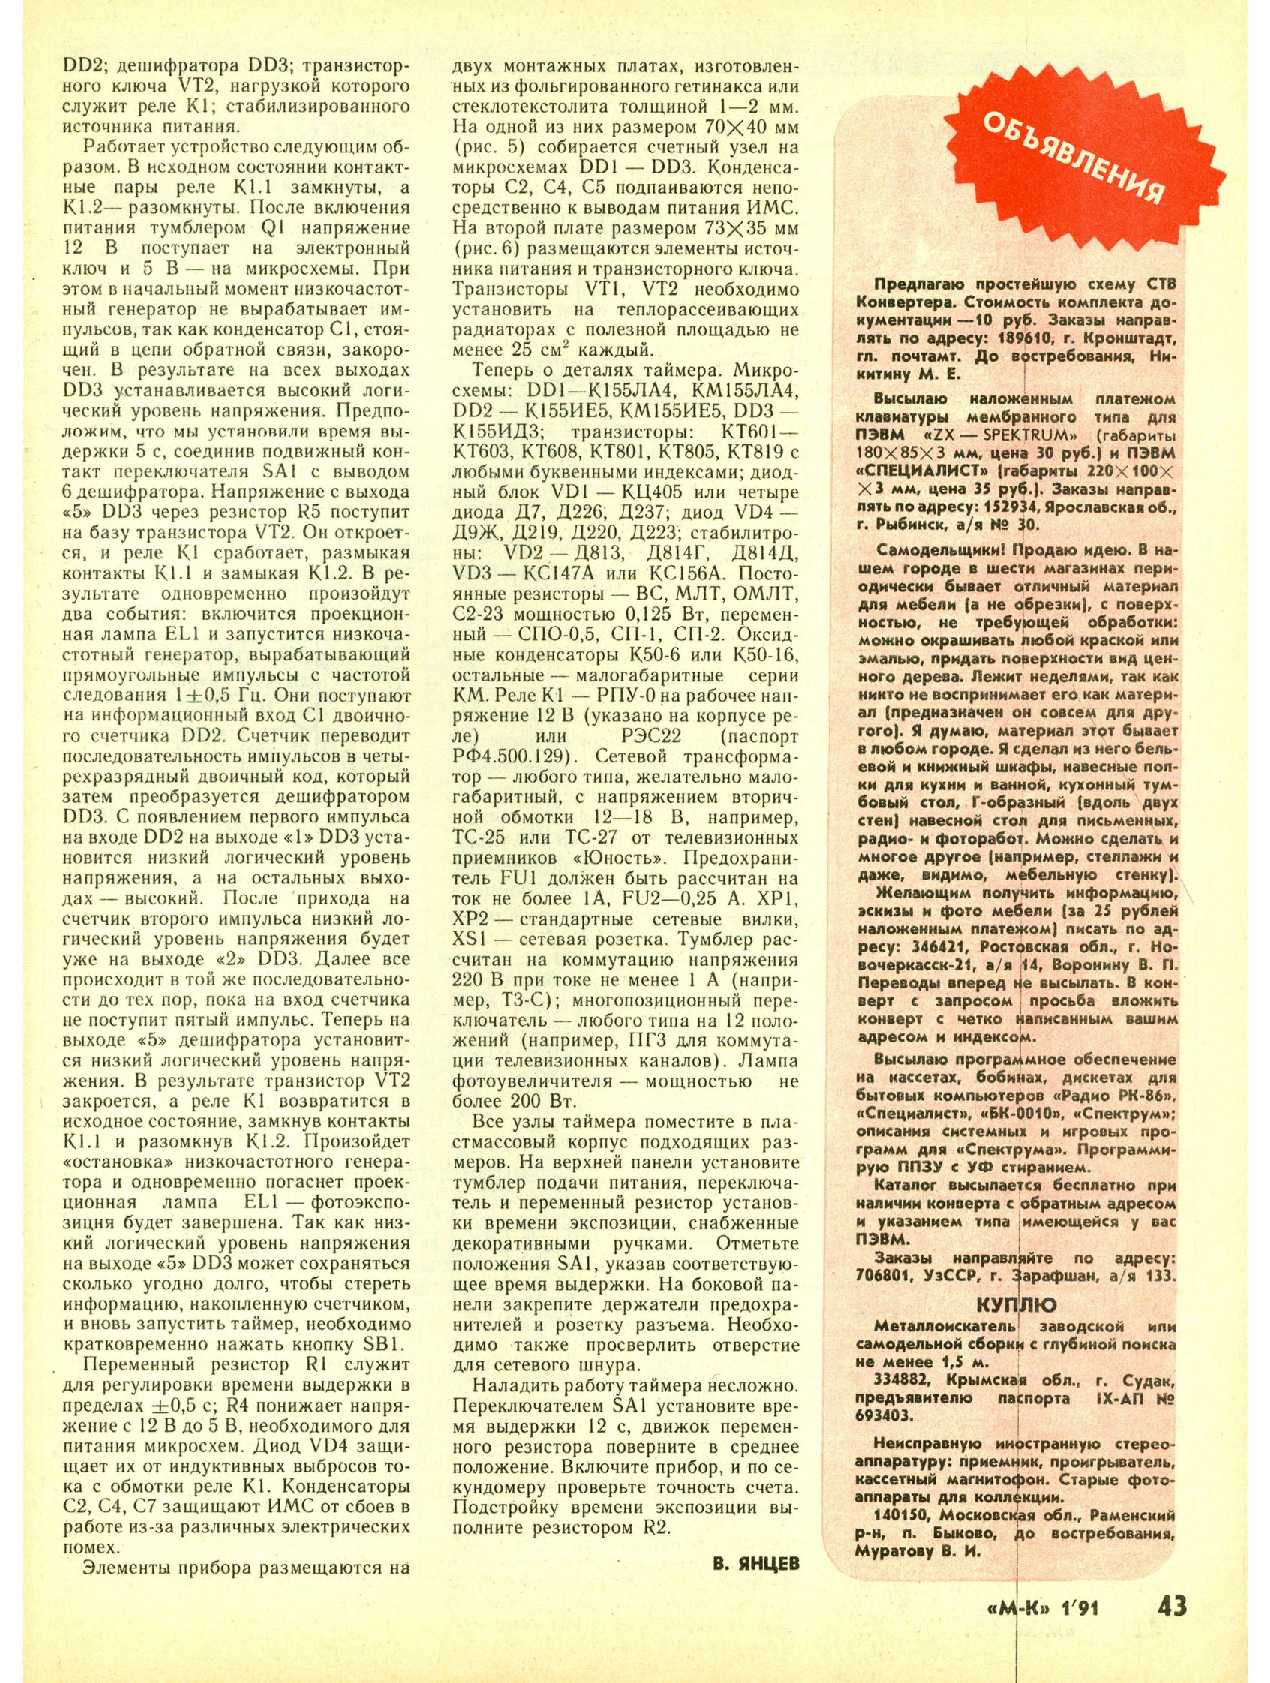 МК 1, 1991, 43 c.